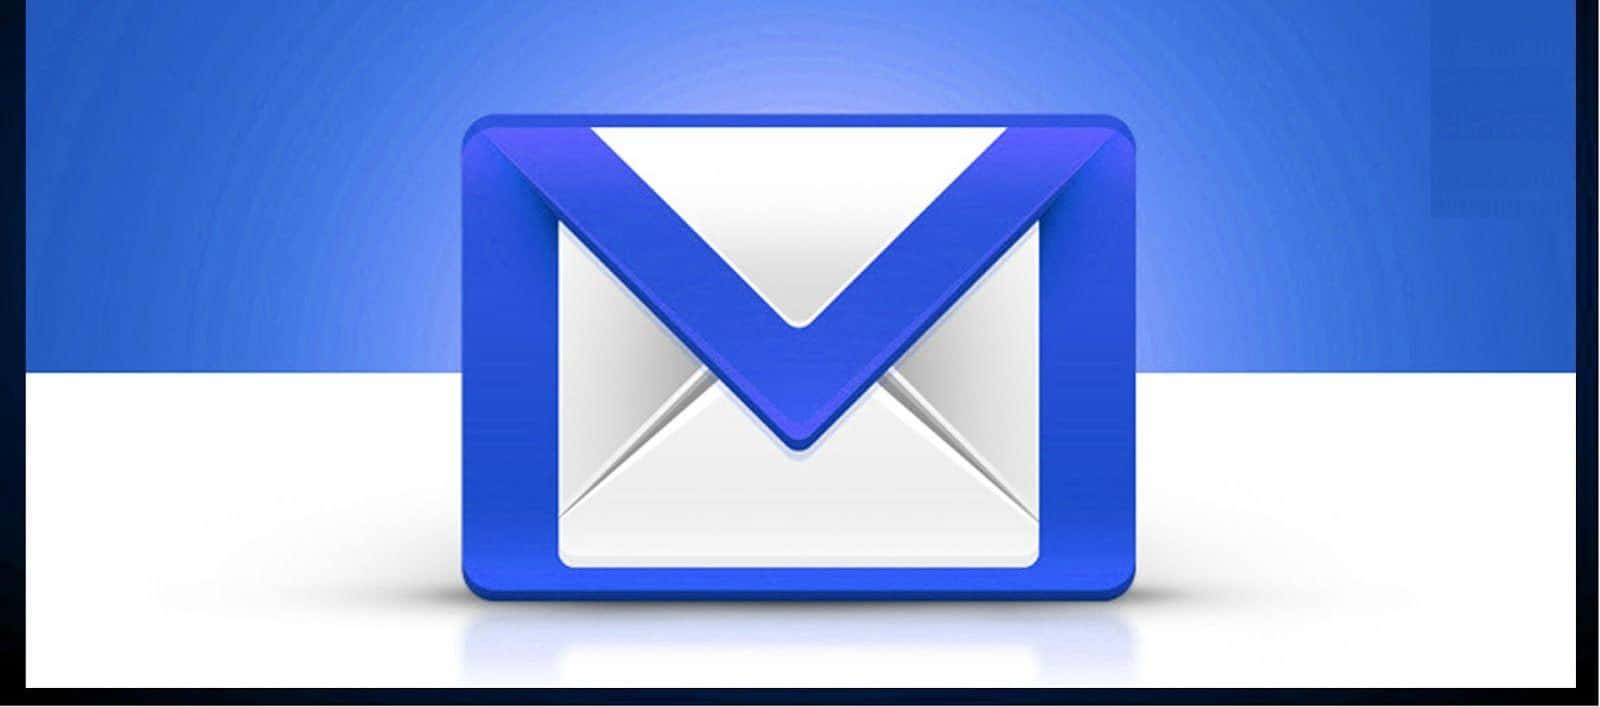 Einblaues Und Weißes E-mail-symbol Auf Einem Blauen Hintergrund.